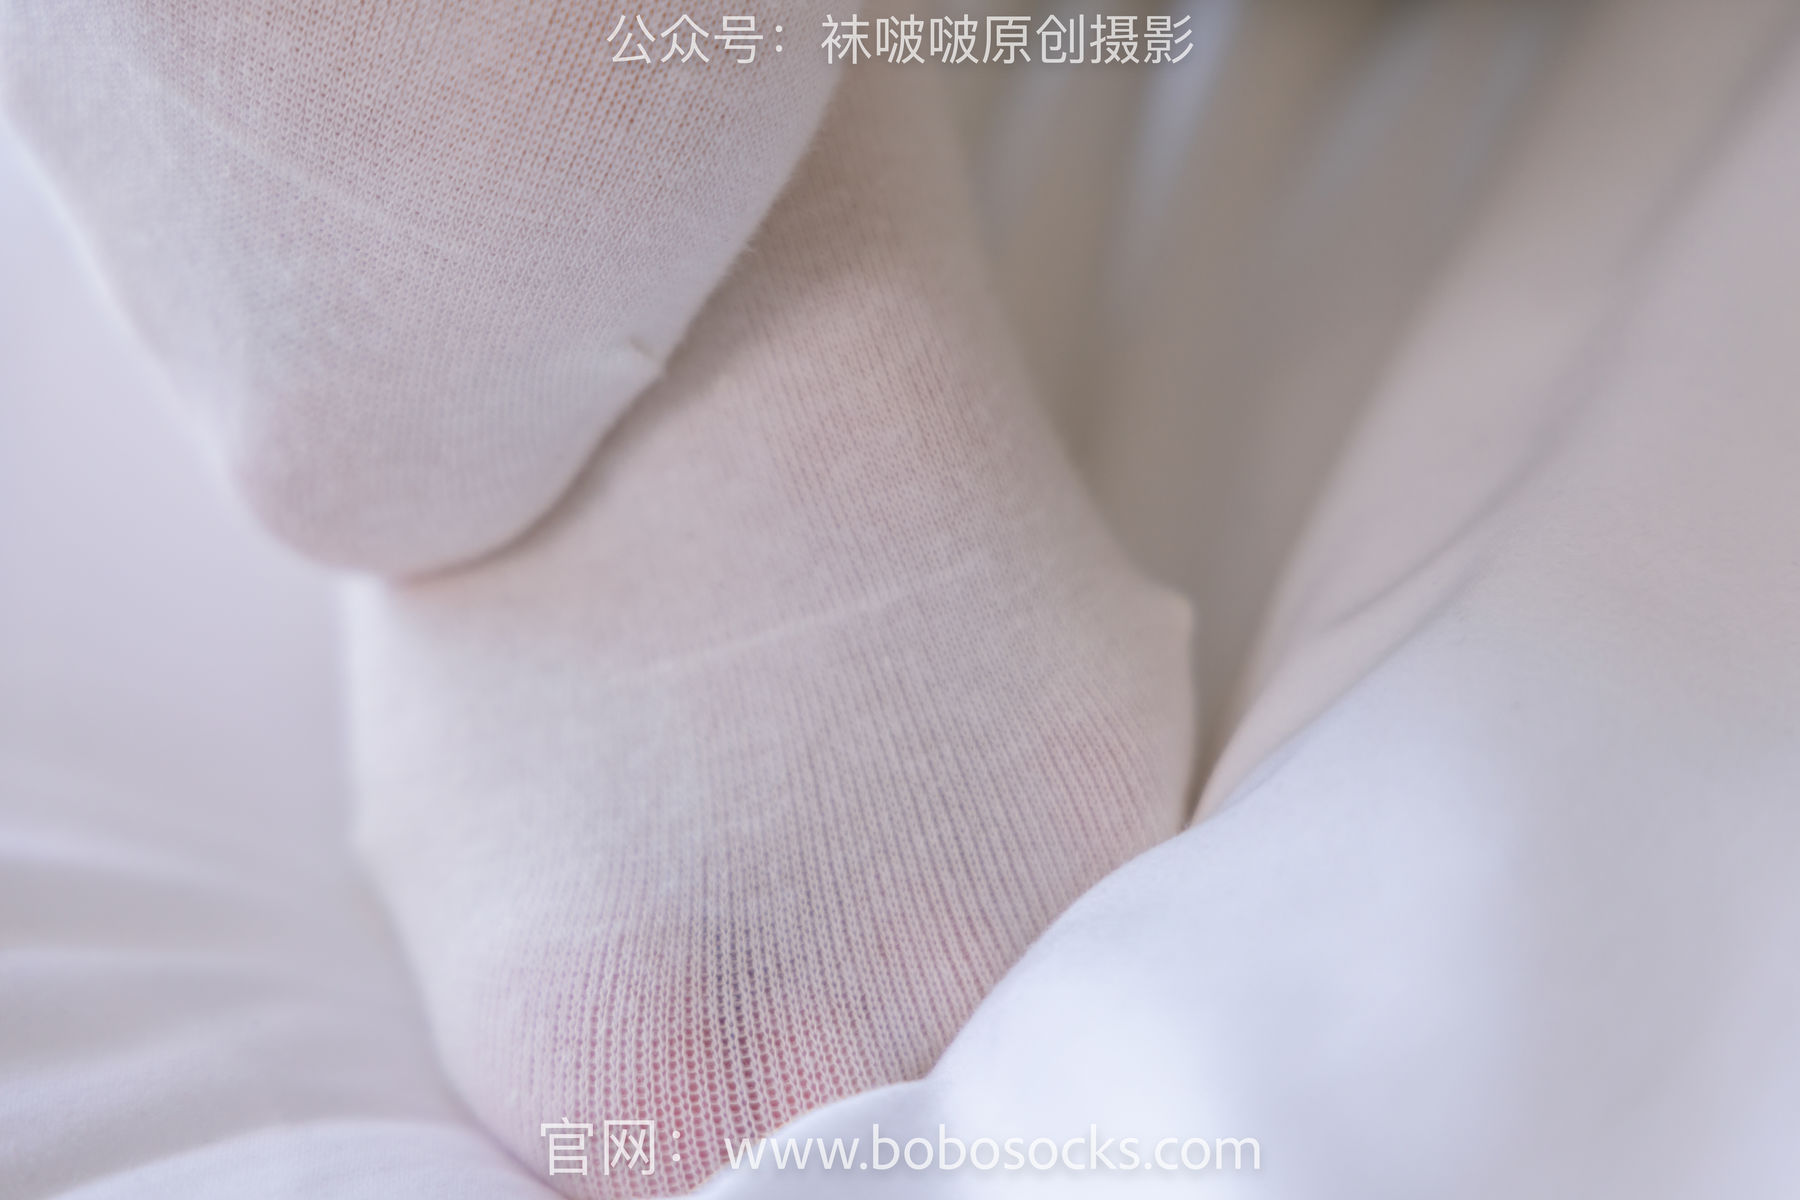 BoBoSocks袜啵啵 No.158 小甜豆-高跟长靴、白棉袜、裸足/(136P)